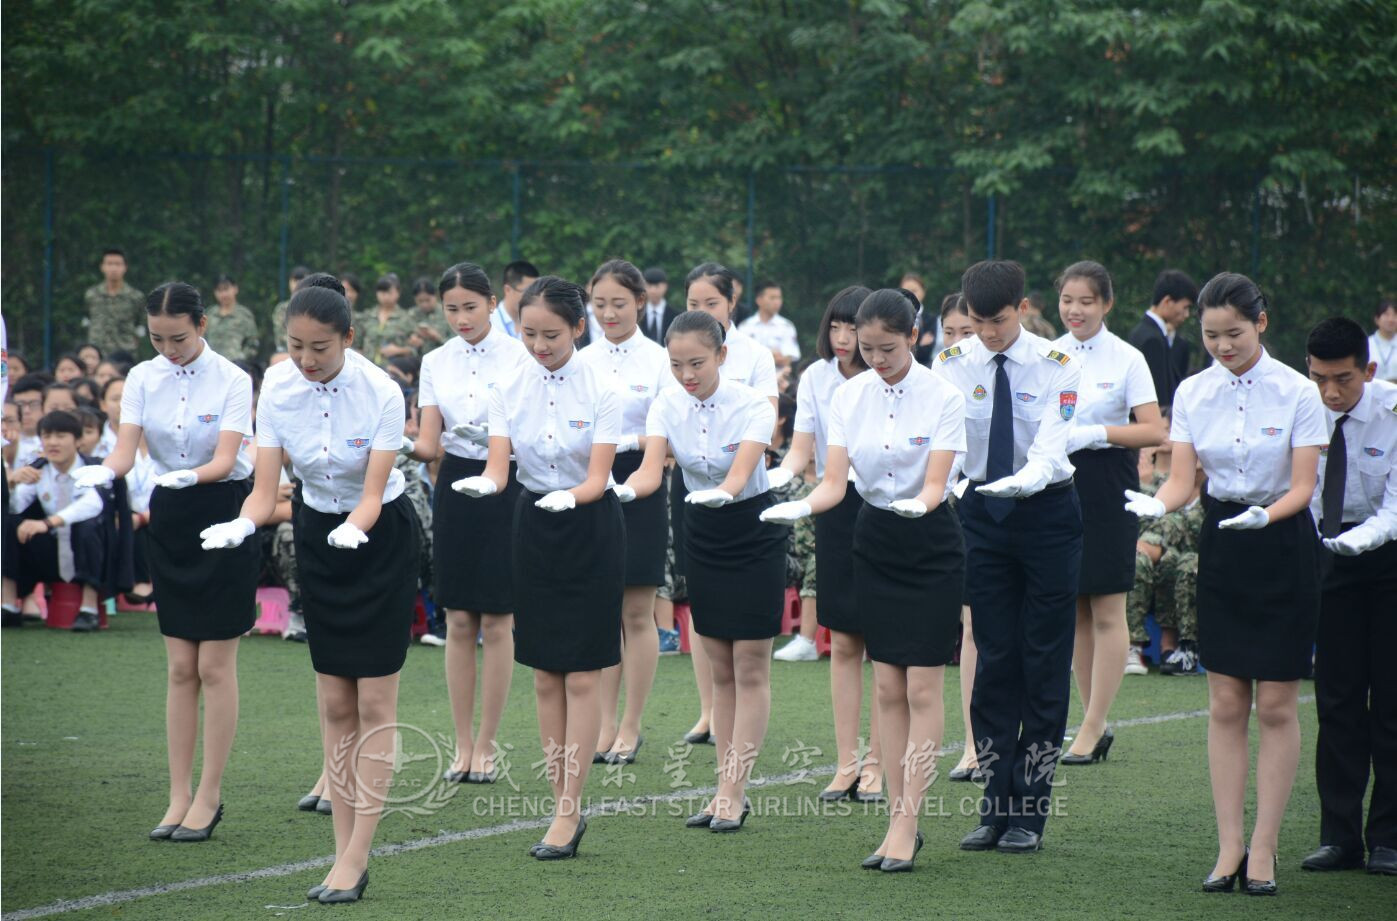 2015年5月22日上午,成都东星航空学院举办第二届"东星杯"彩妆技能